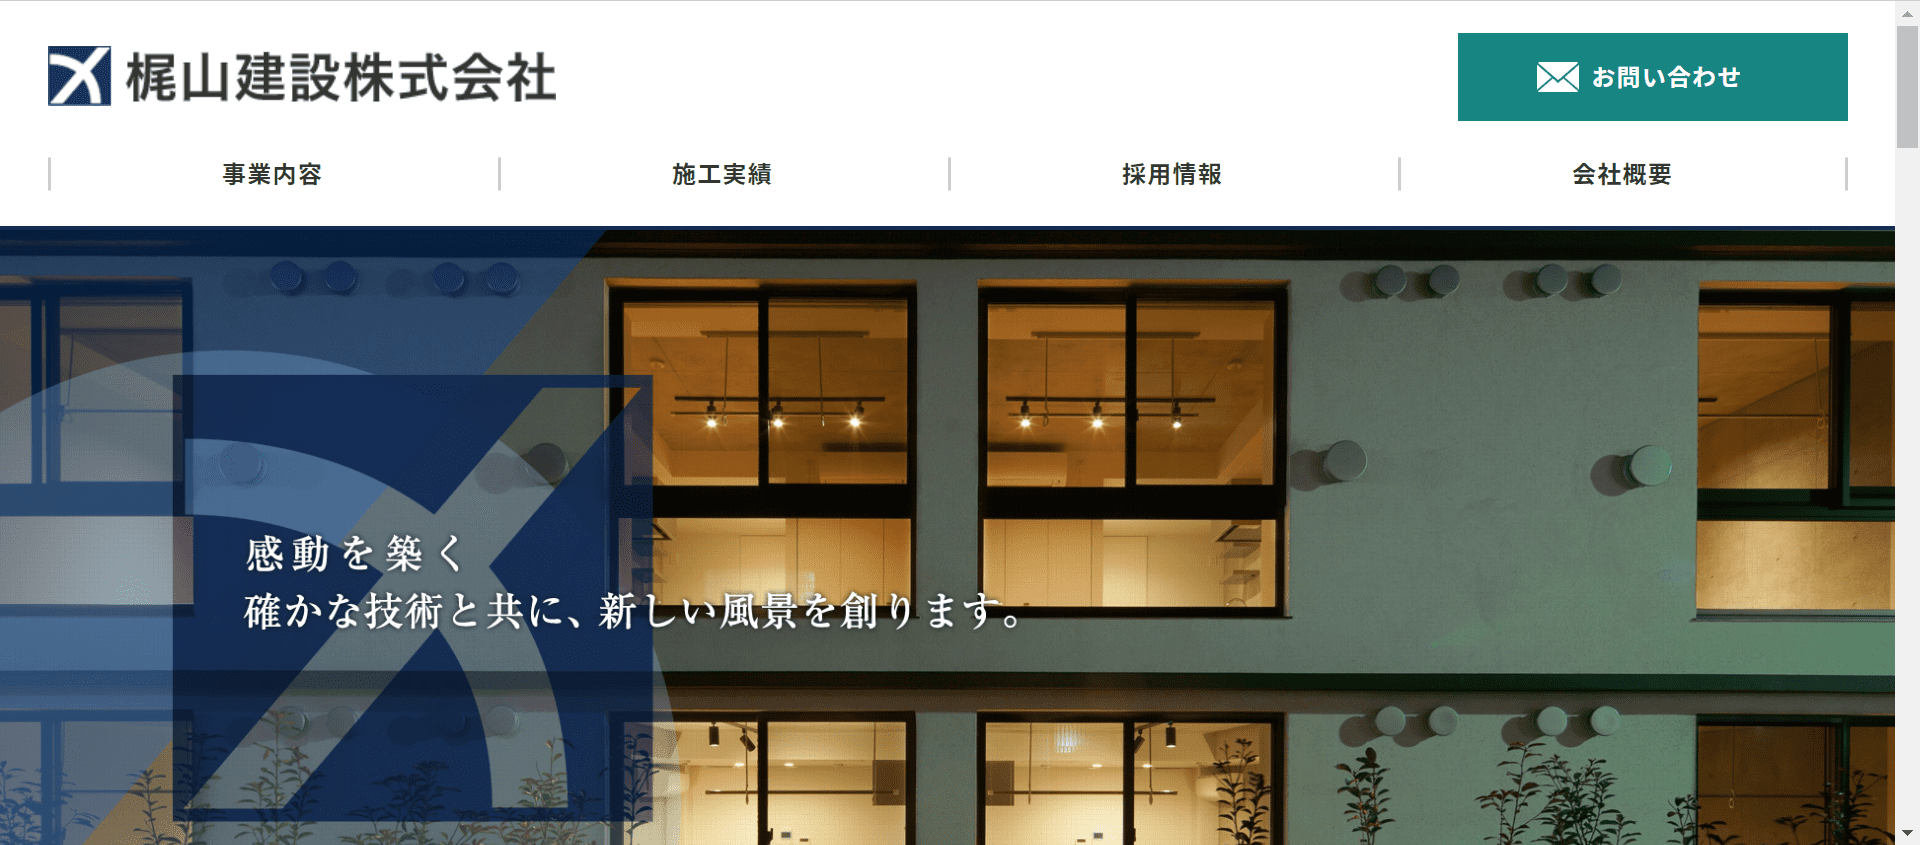 梶山建設株式会社のホームページ画像